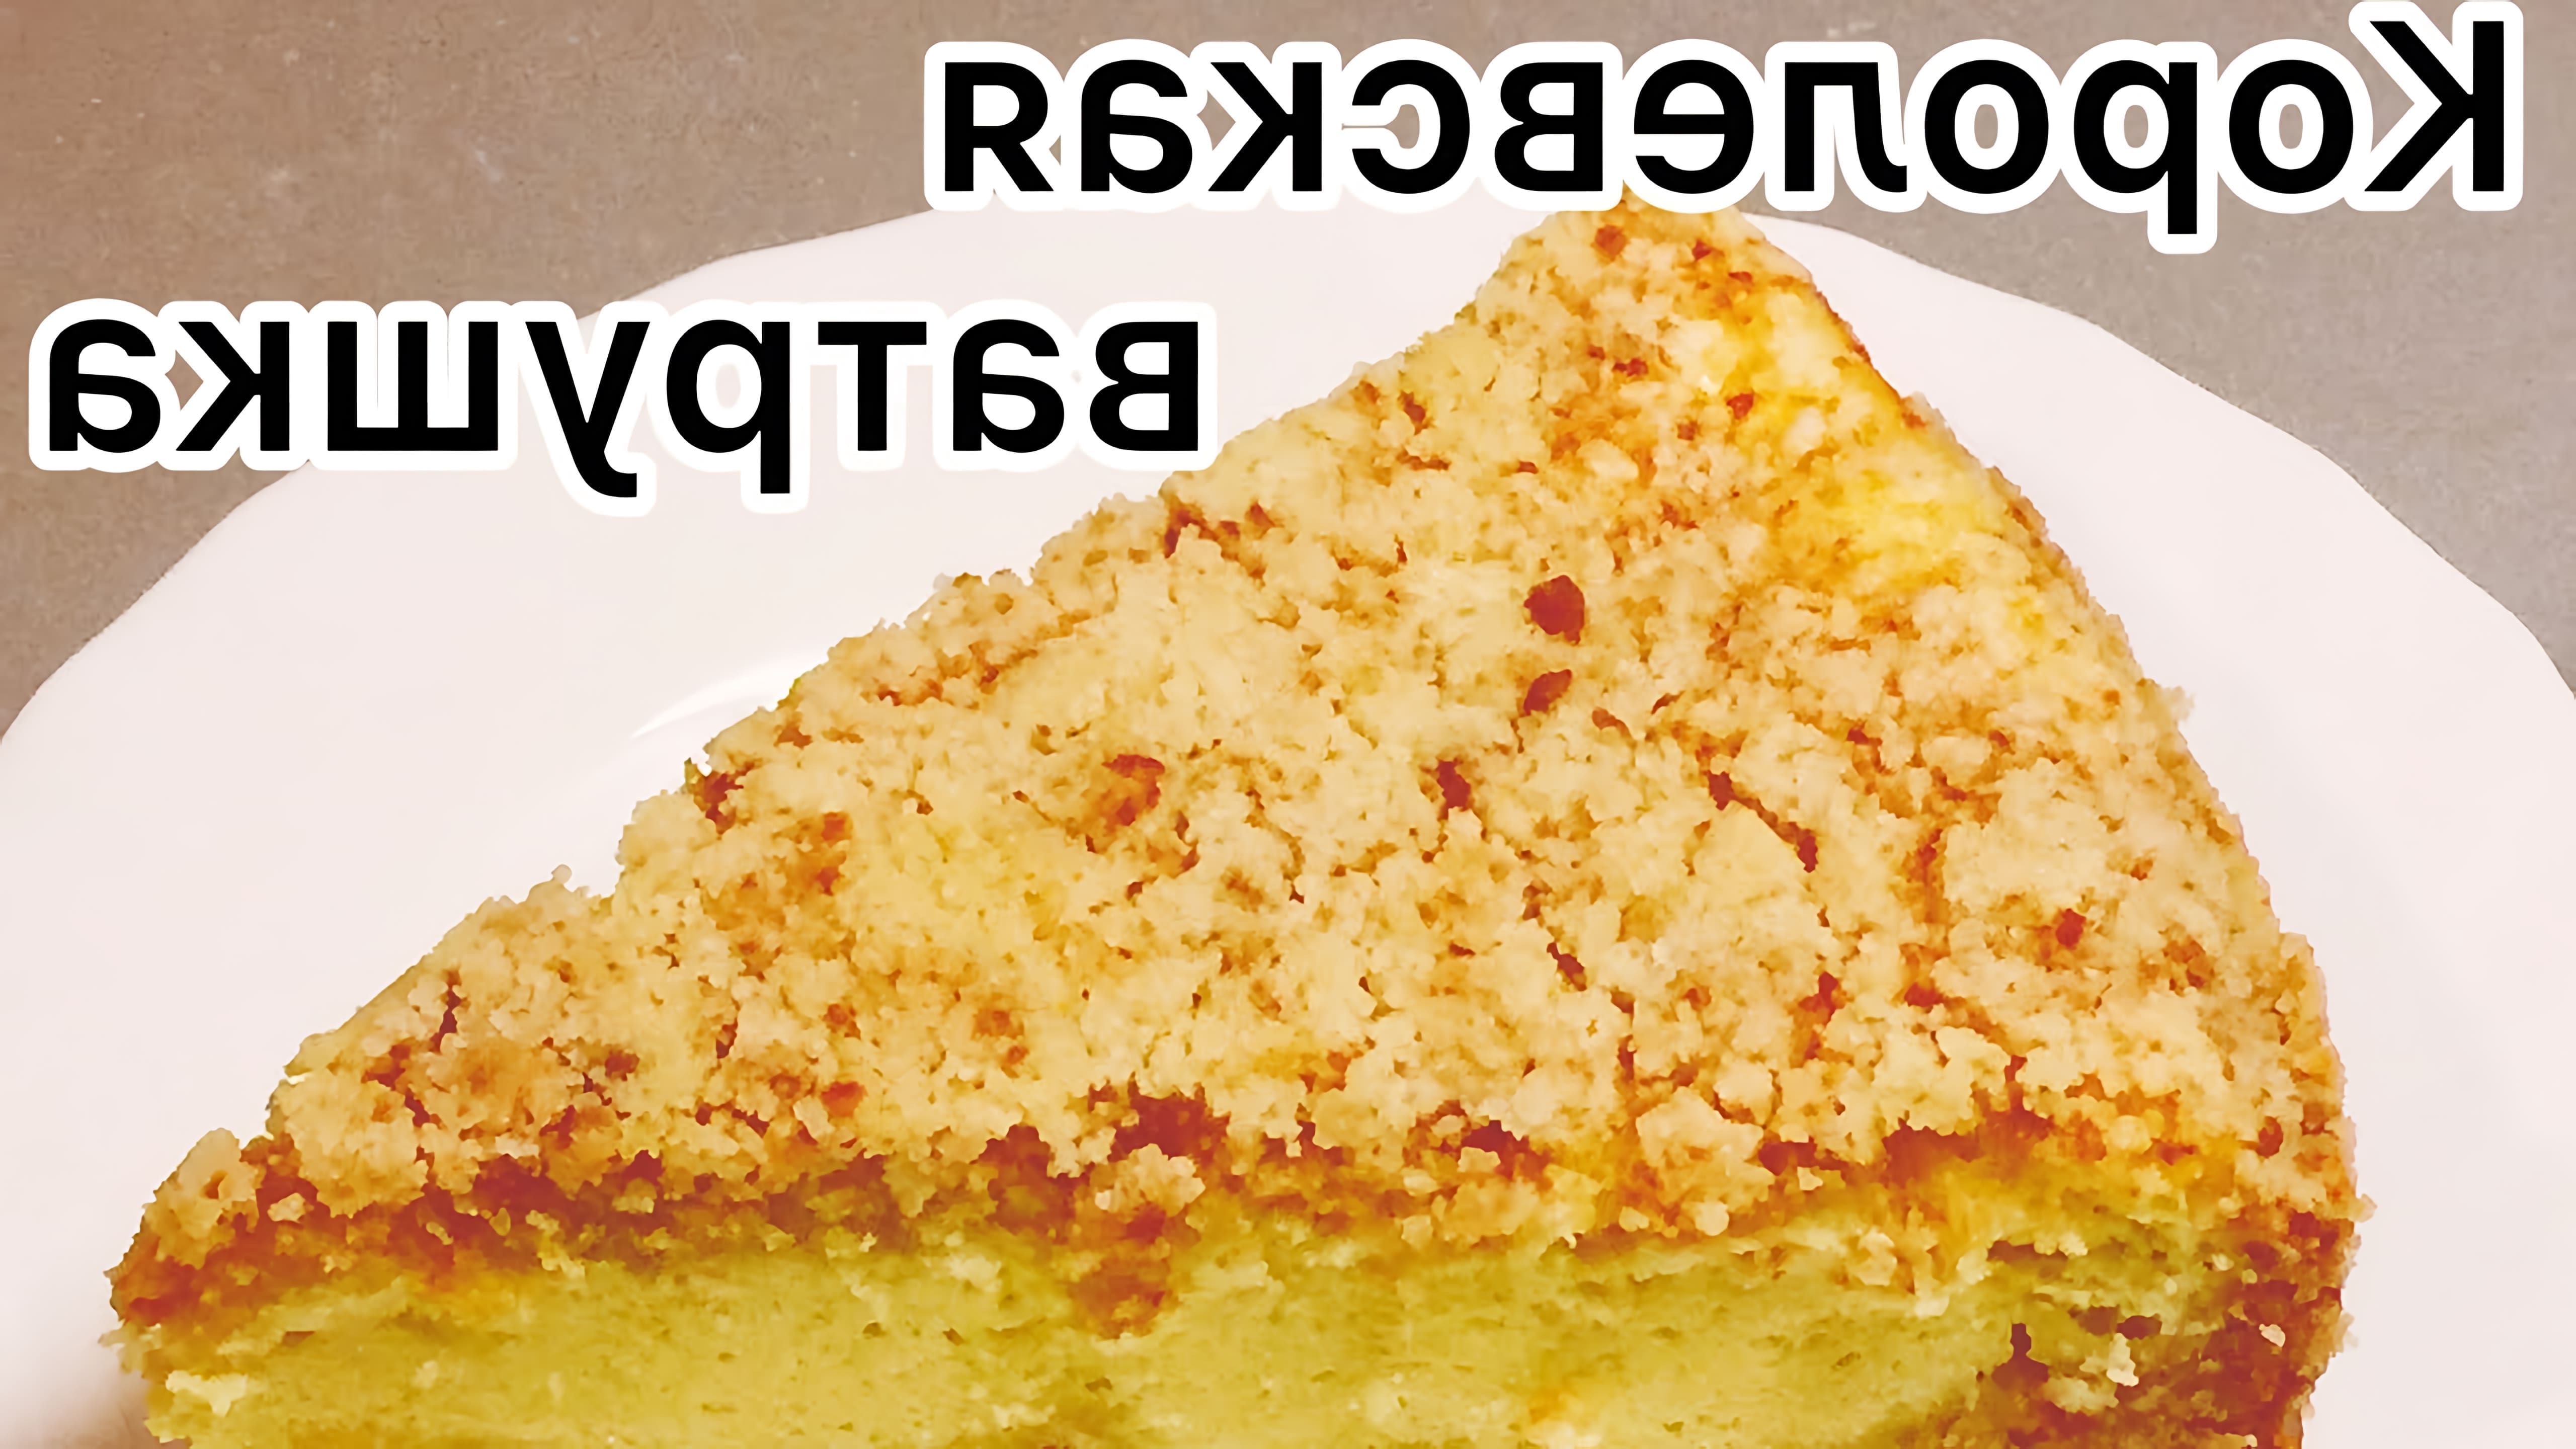 В этом видео демонстрируется рецепт приготовления королевской ватрушки - невероятно вкусного пирога